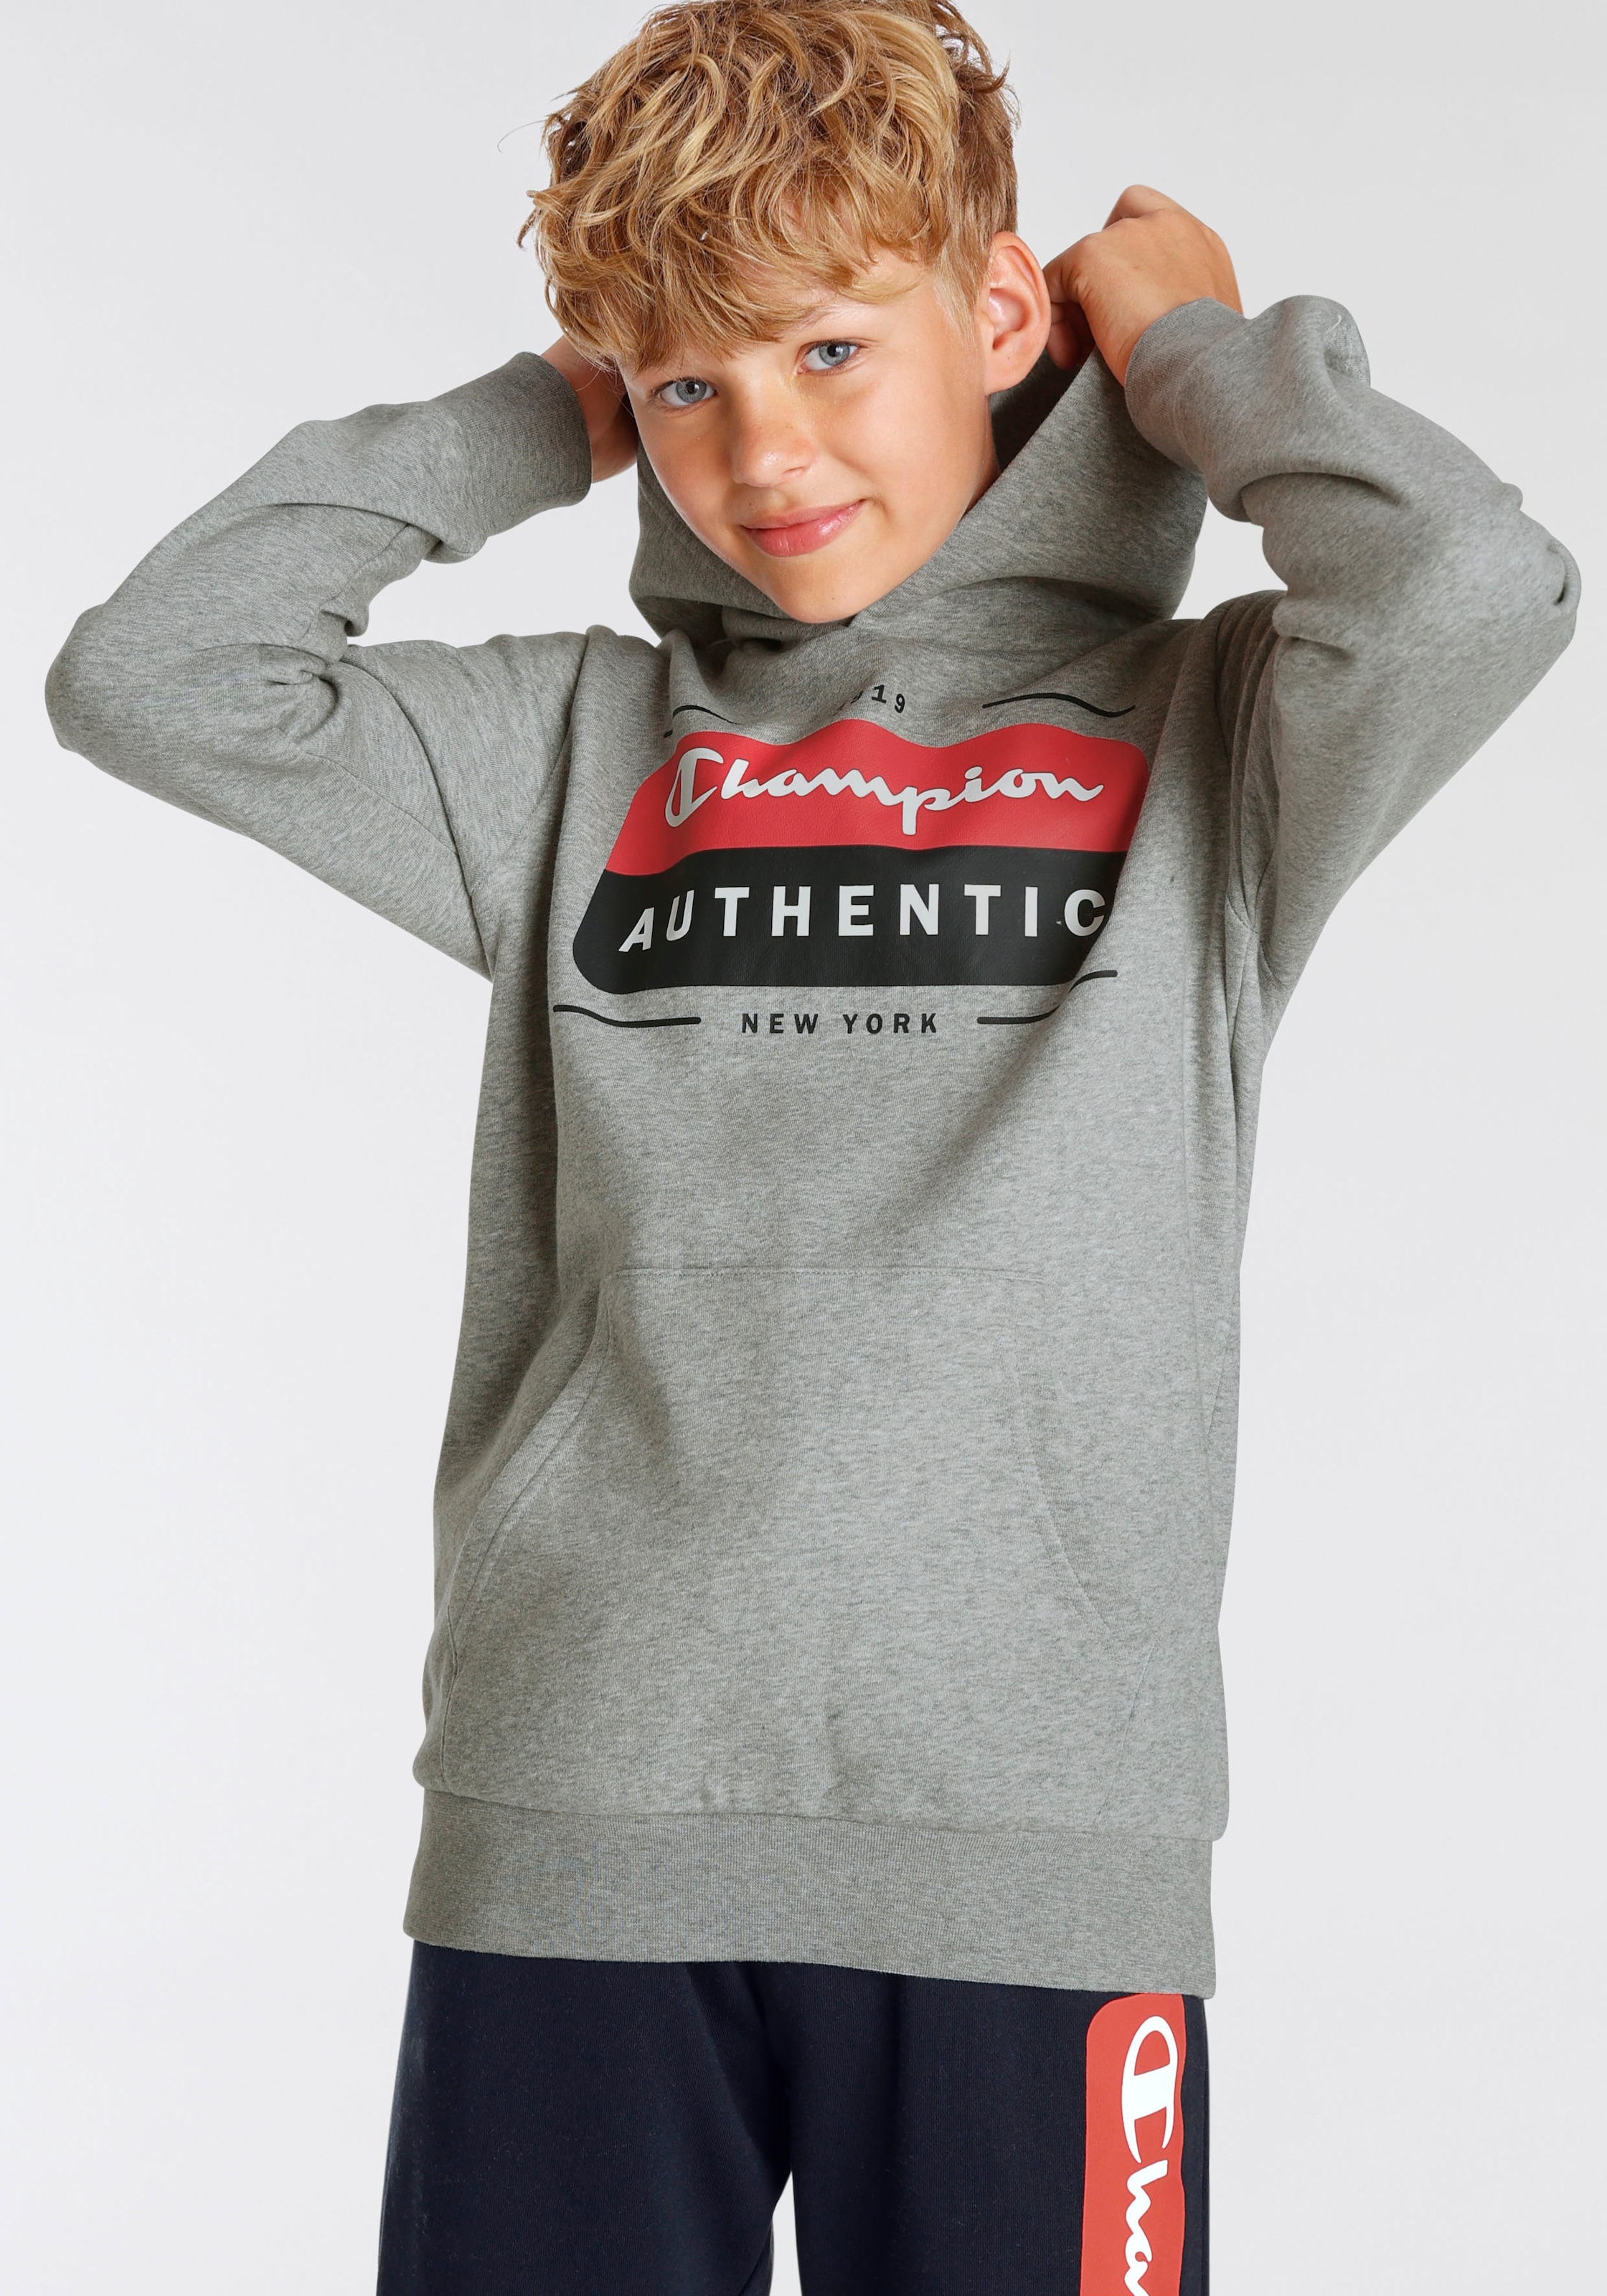 kaufen »Graphic Sweatshirt für Kinder« - Champion OTTO bei Hooded Sweatshirt Shop